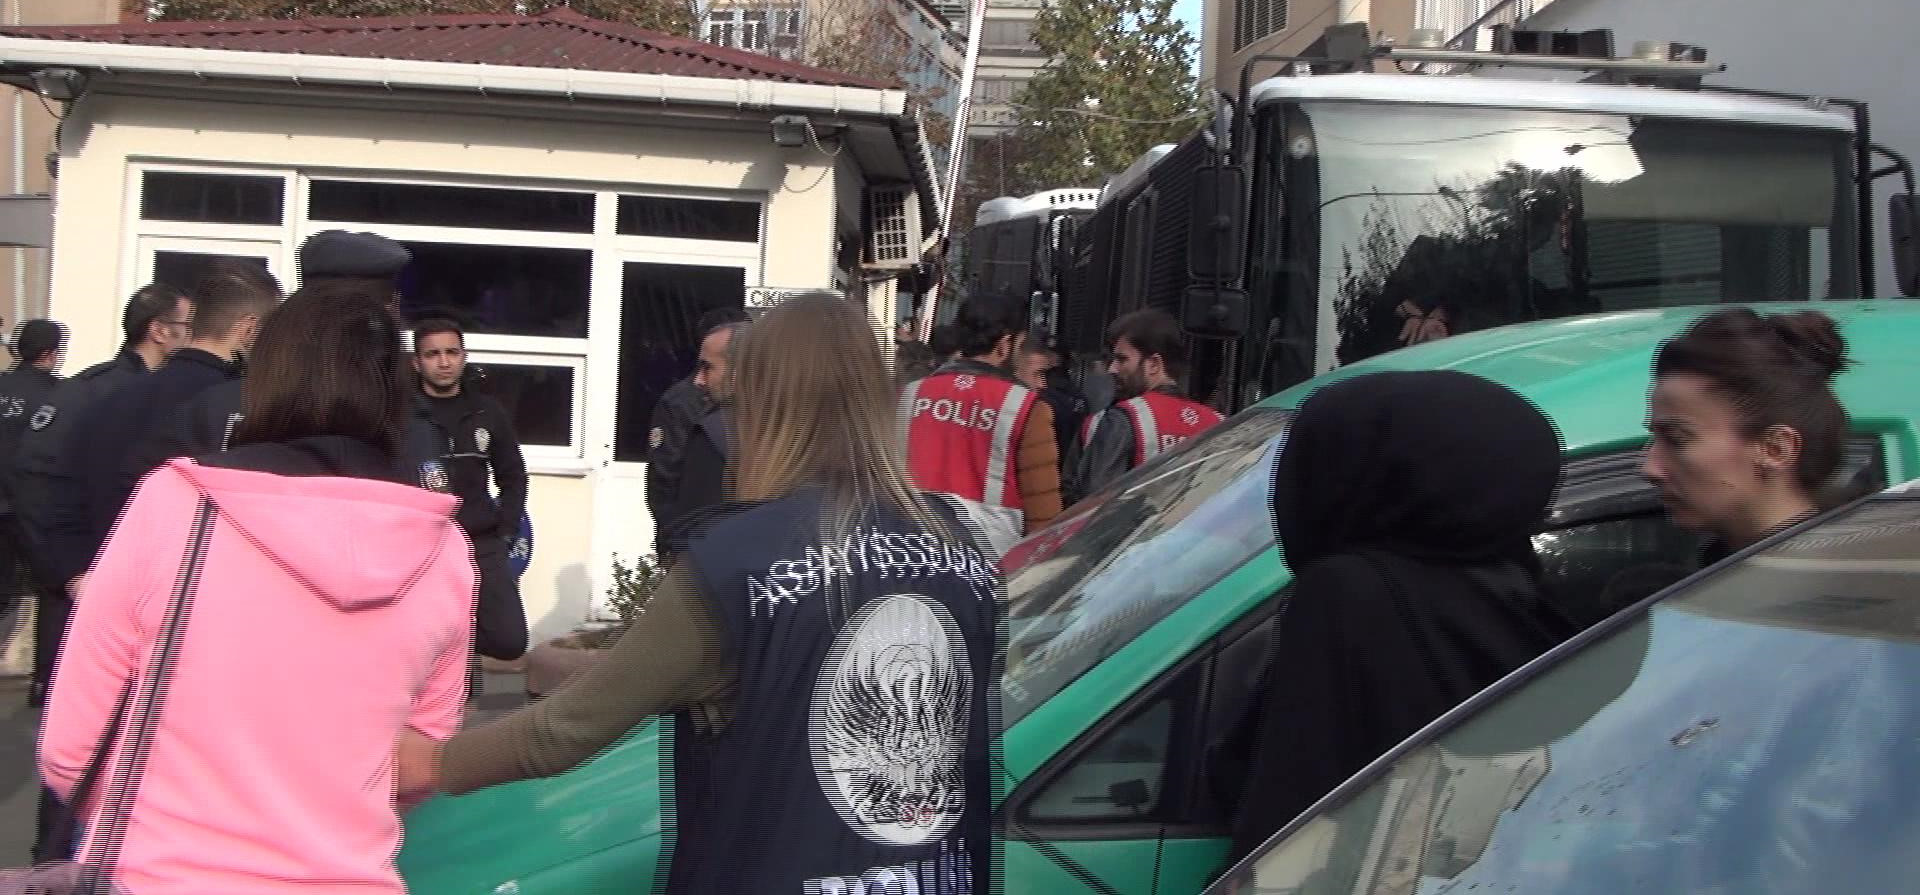 İstanbul ve Samsun'da eş zamanlı olarak düzenlenen baskınlarda organize bir şekilde dolandırıcılık yaptıkları iddia edilen 3'ü kadın 1'i çocuk 29 kişi gözaltına alınmıştı.